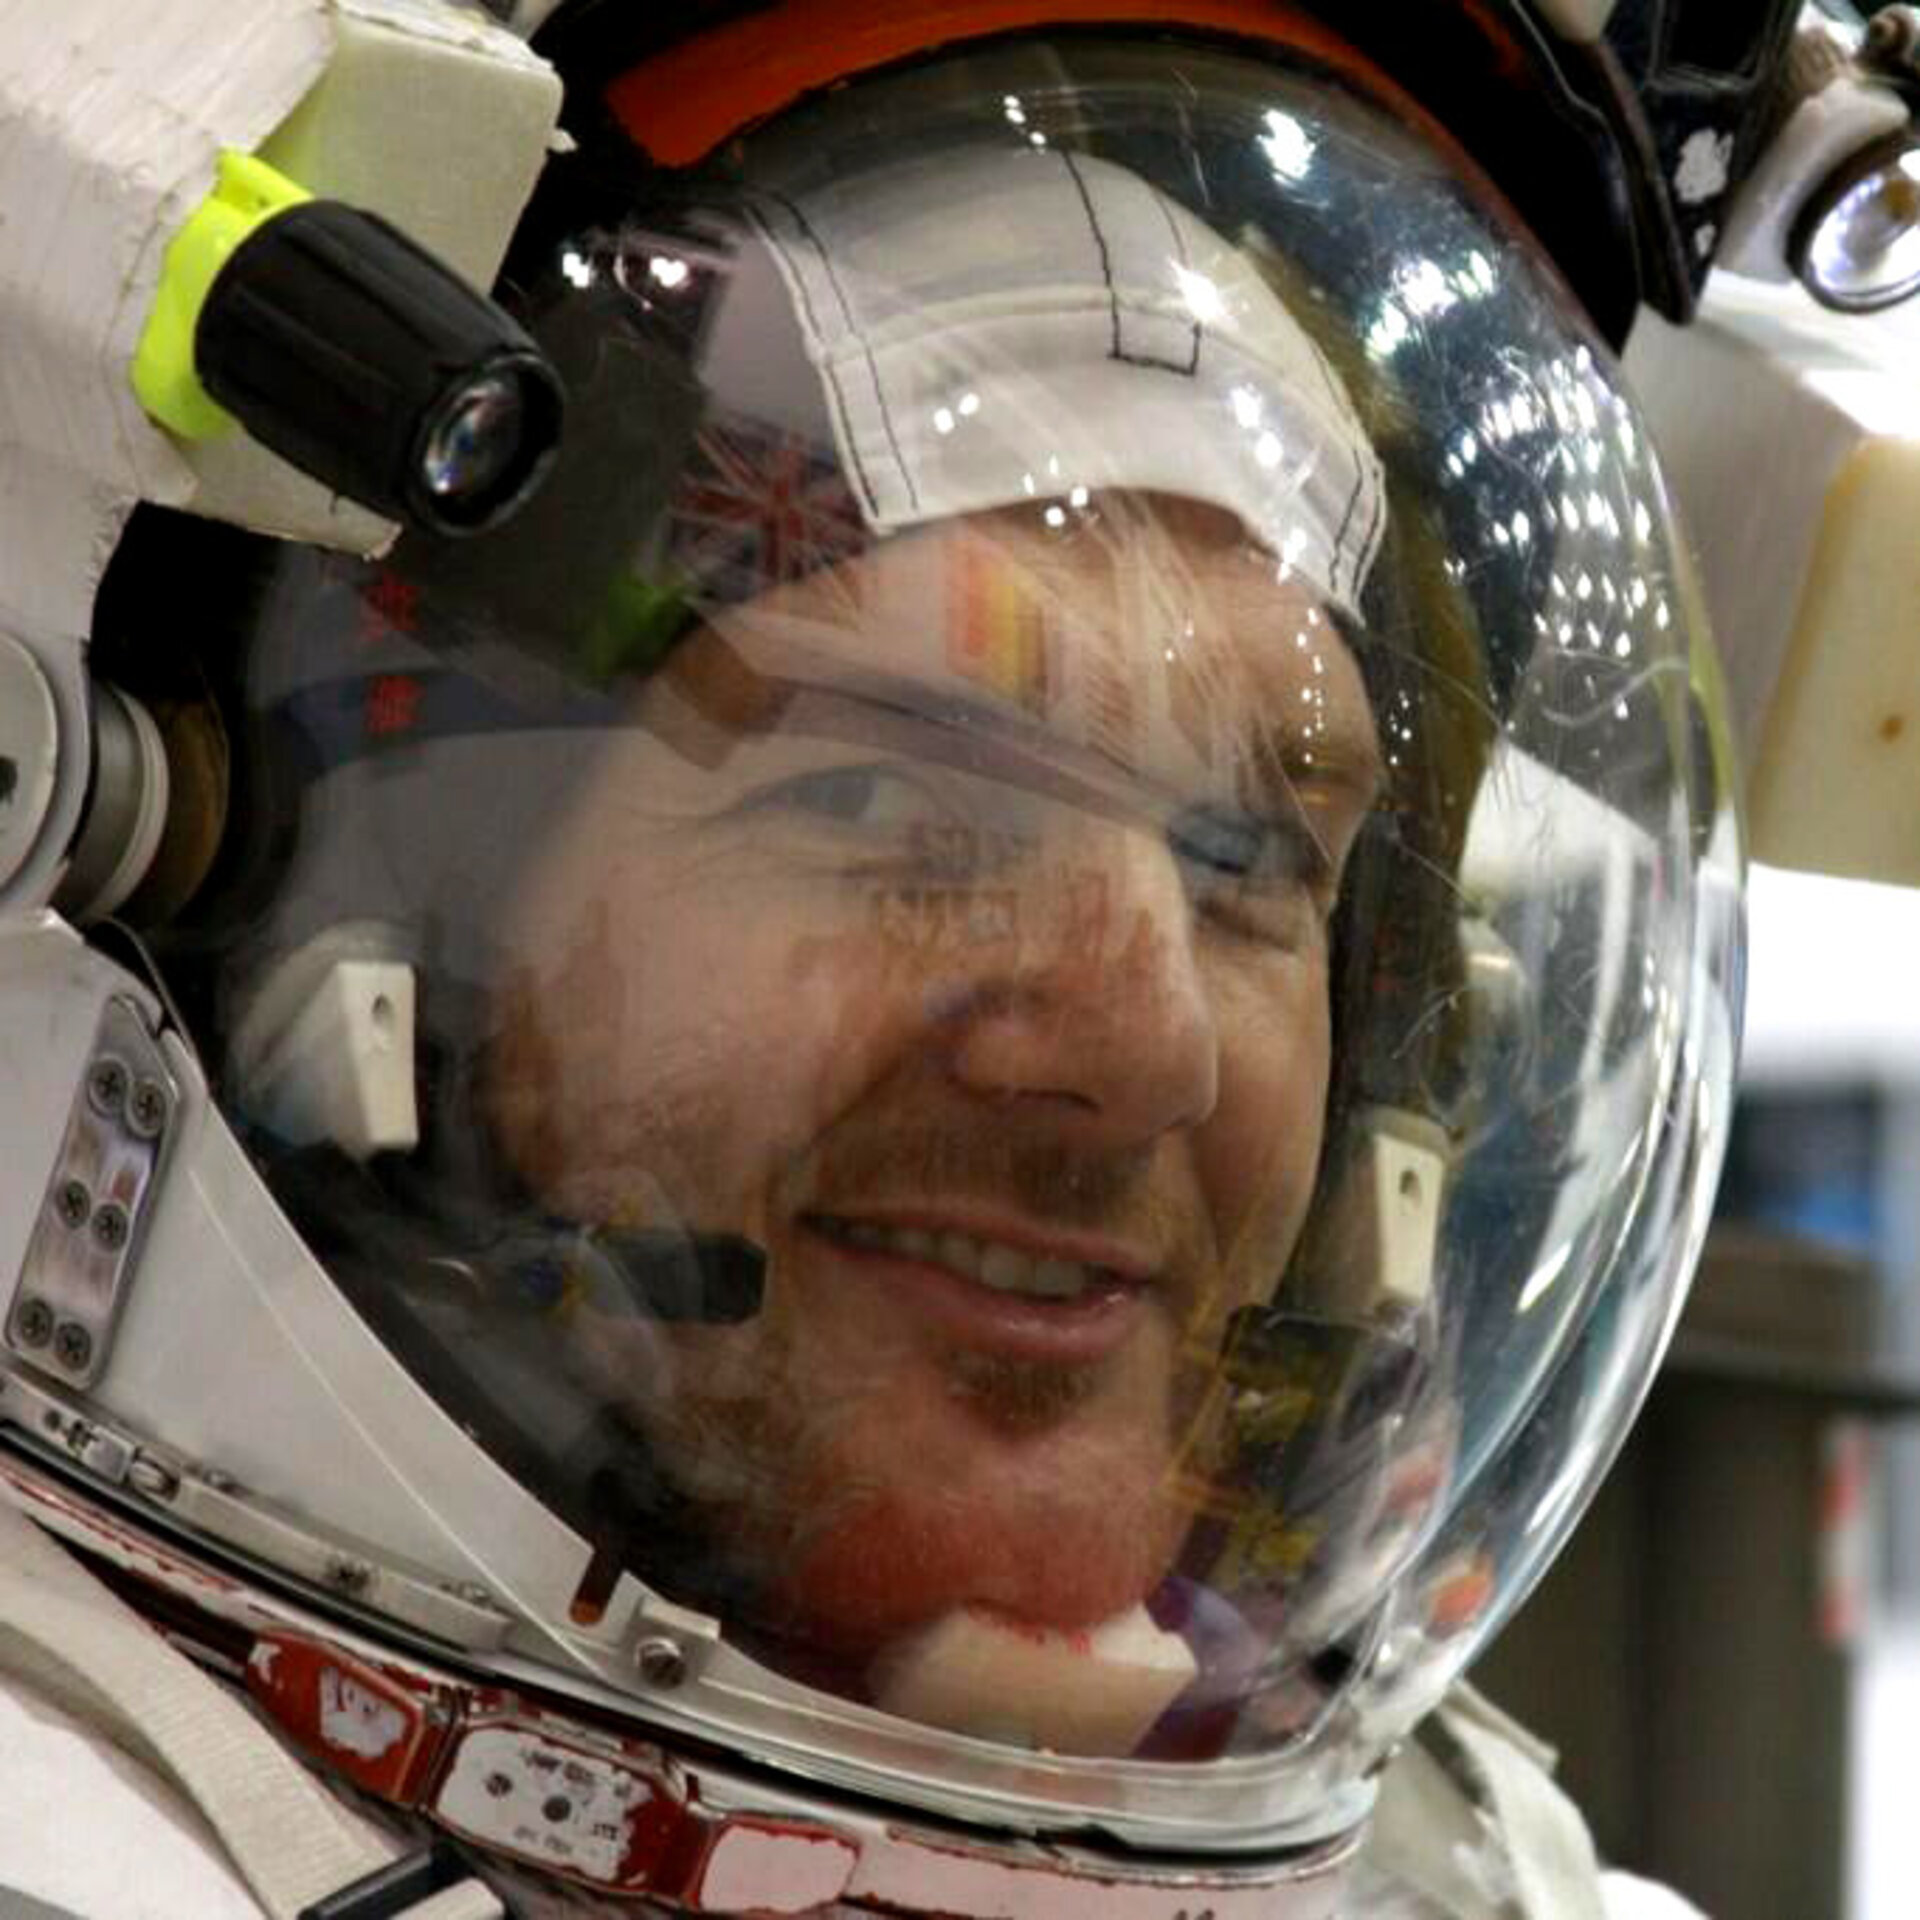 ESA astronaut Alexander Gerst during training